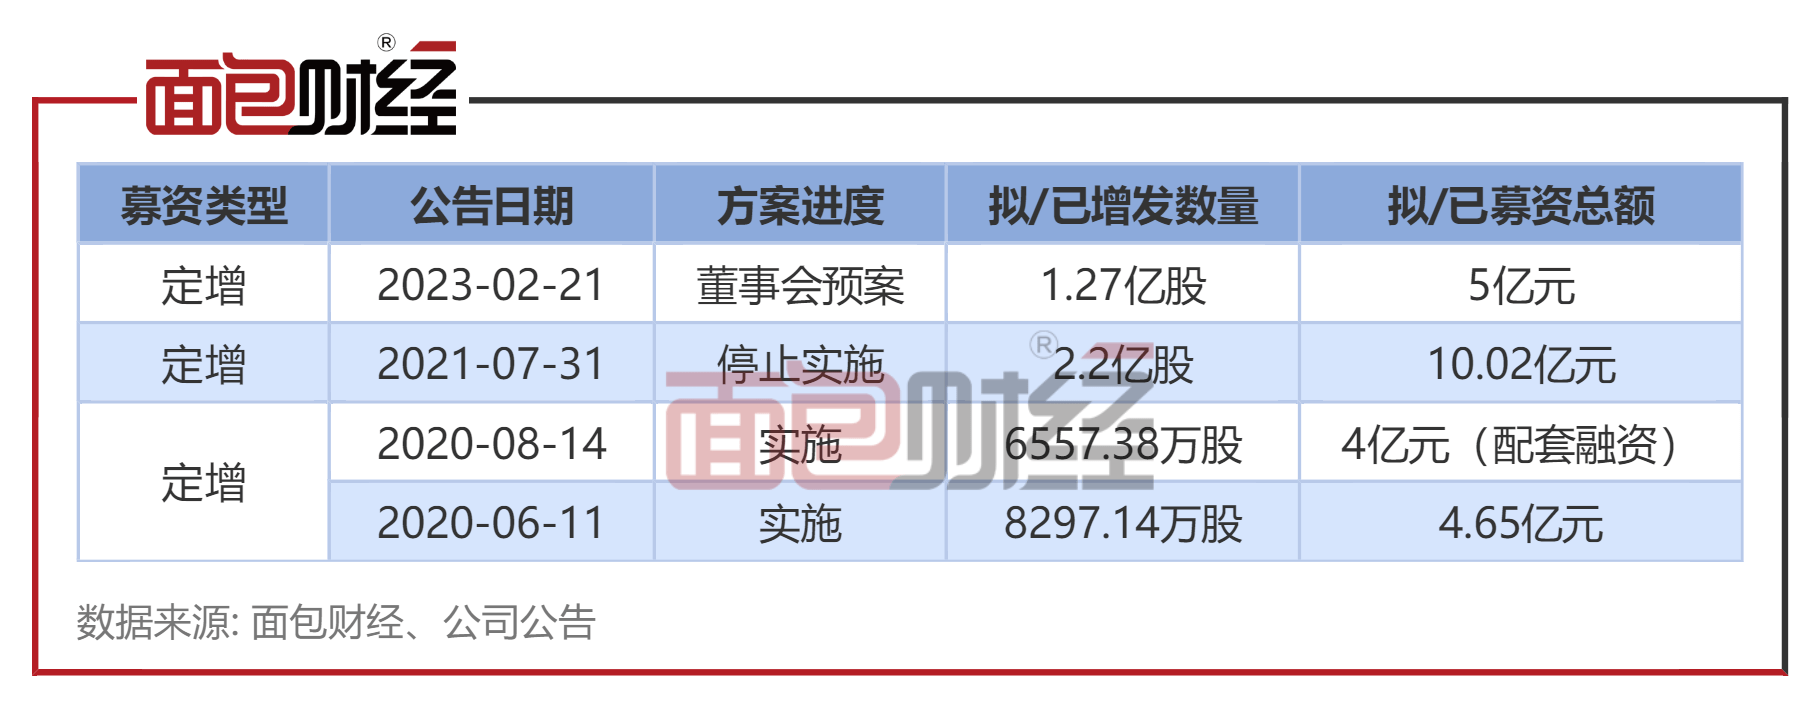 福能东方：拟向控股股东定增1.27亿股 过去3年筹划3次再融资